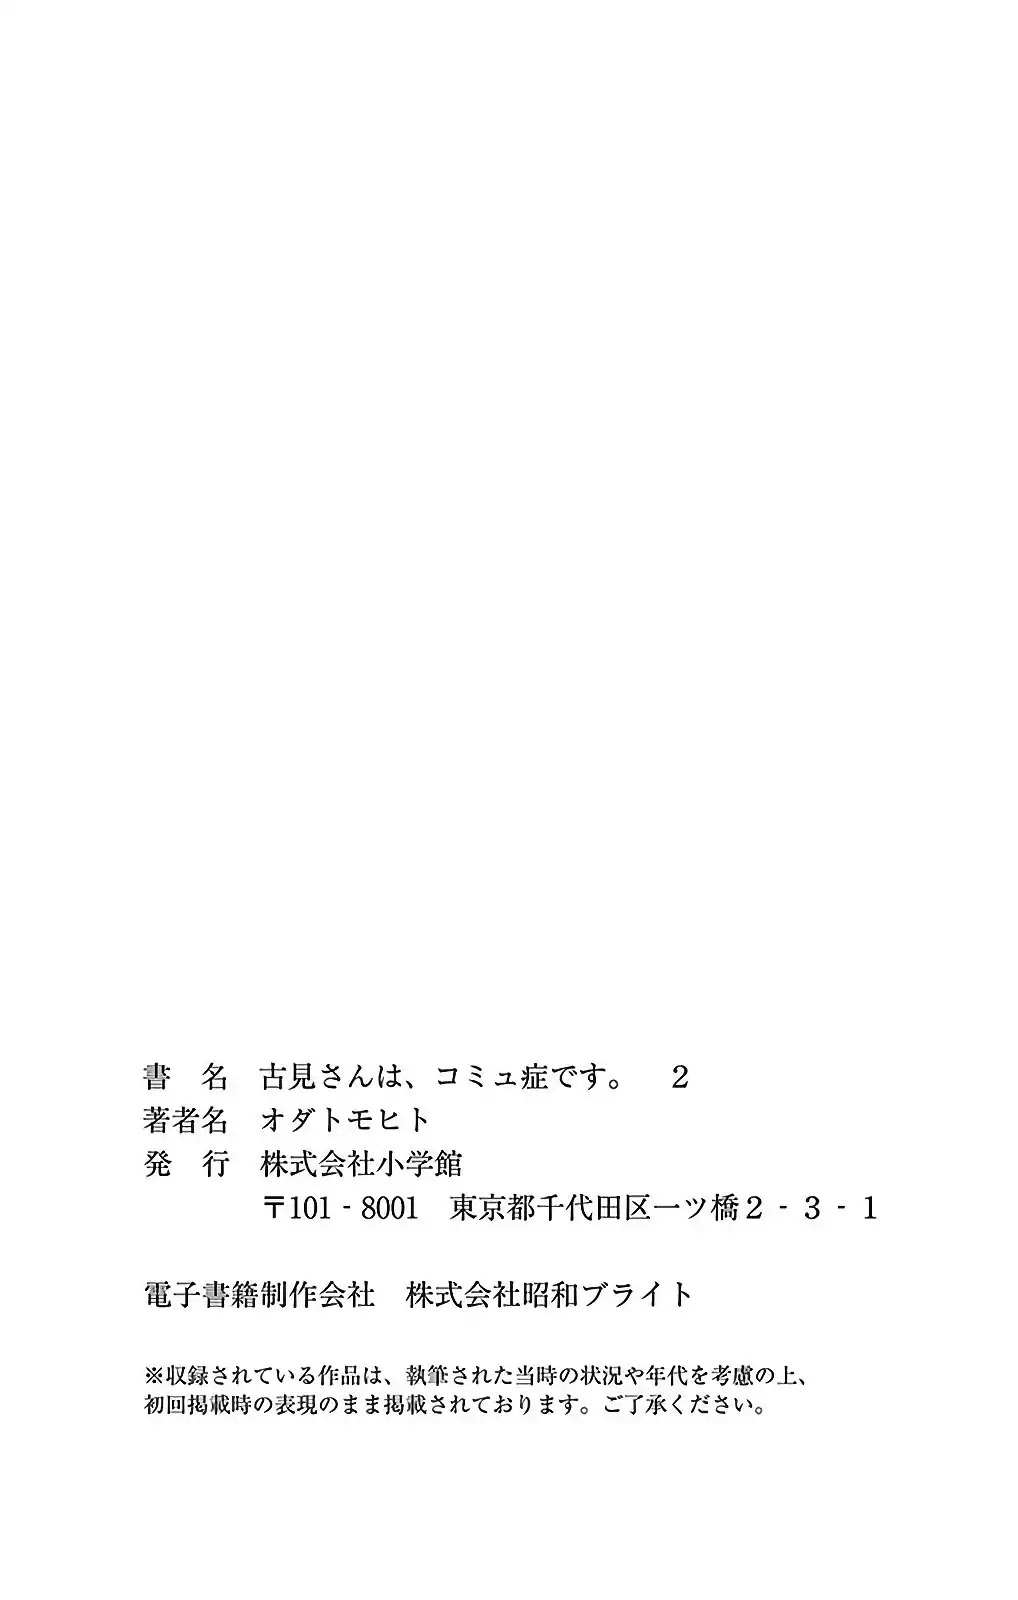 Komi-san wa Komyushou Desu Vol.2 Chapter 34.5: Omake